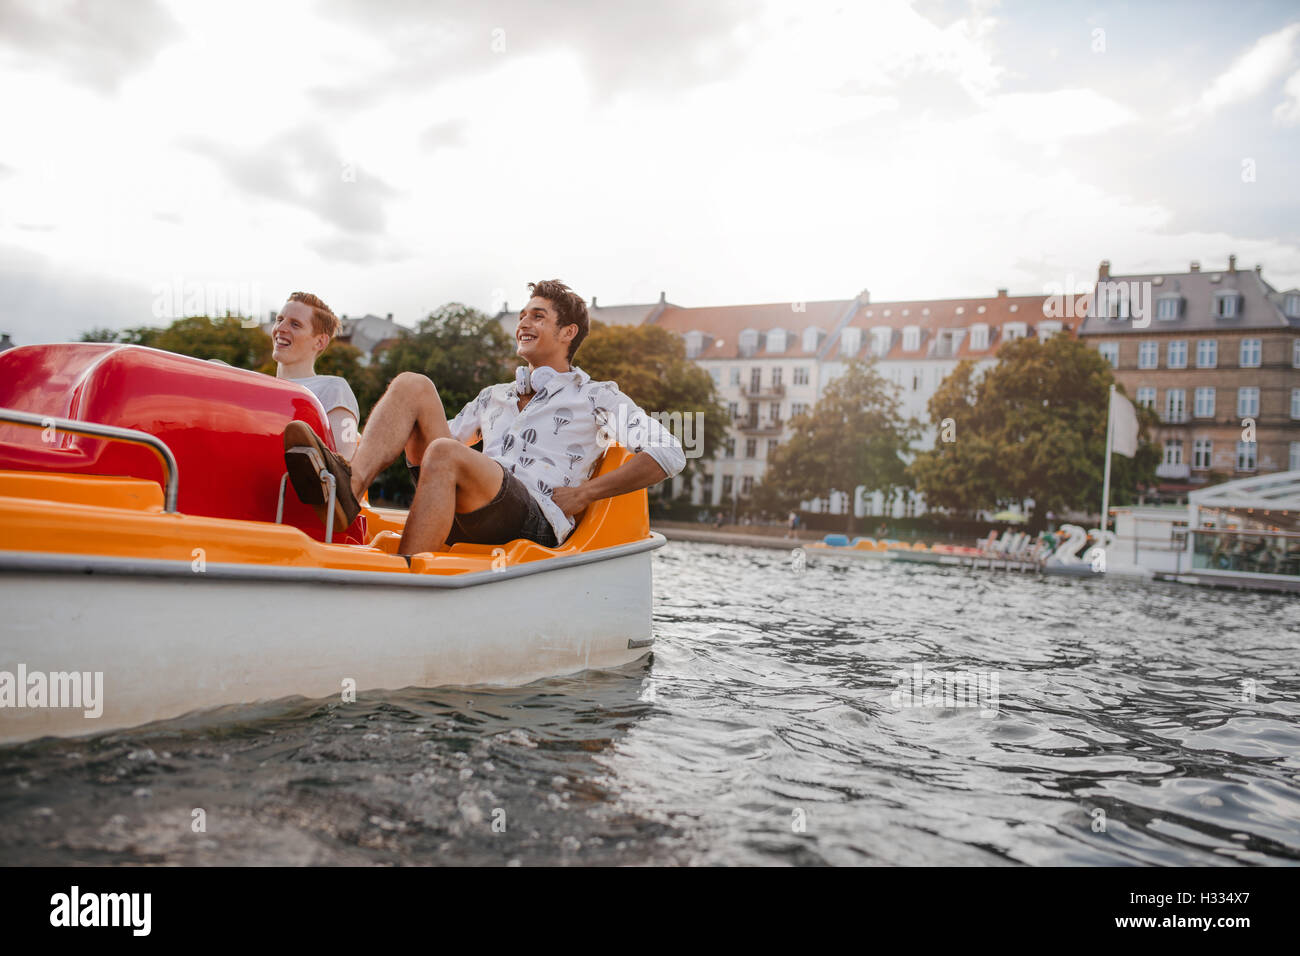 Afuera, tiro de dos jóvenes amigos sentado en bote a pedal. Los chicos adolescentes disfrutar de paseos en bote en el lago. Foto de stock